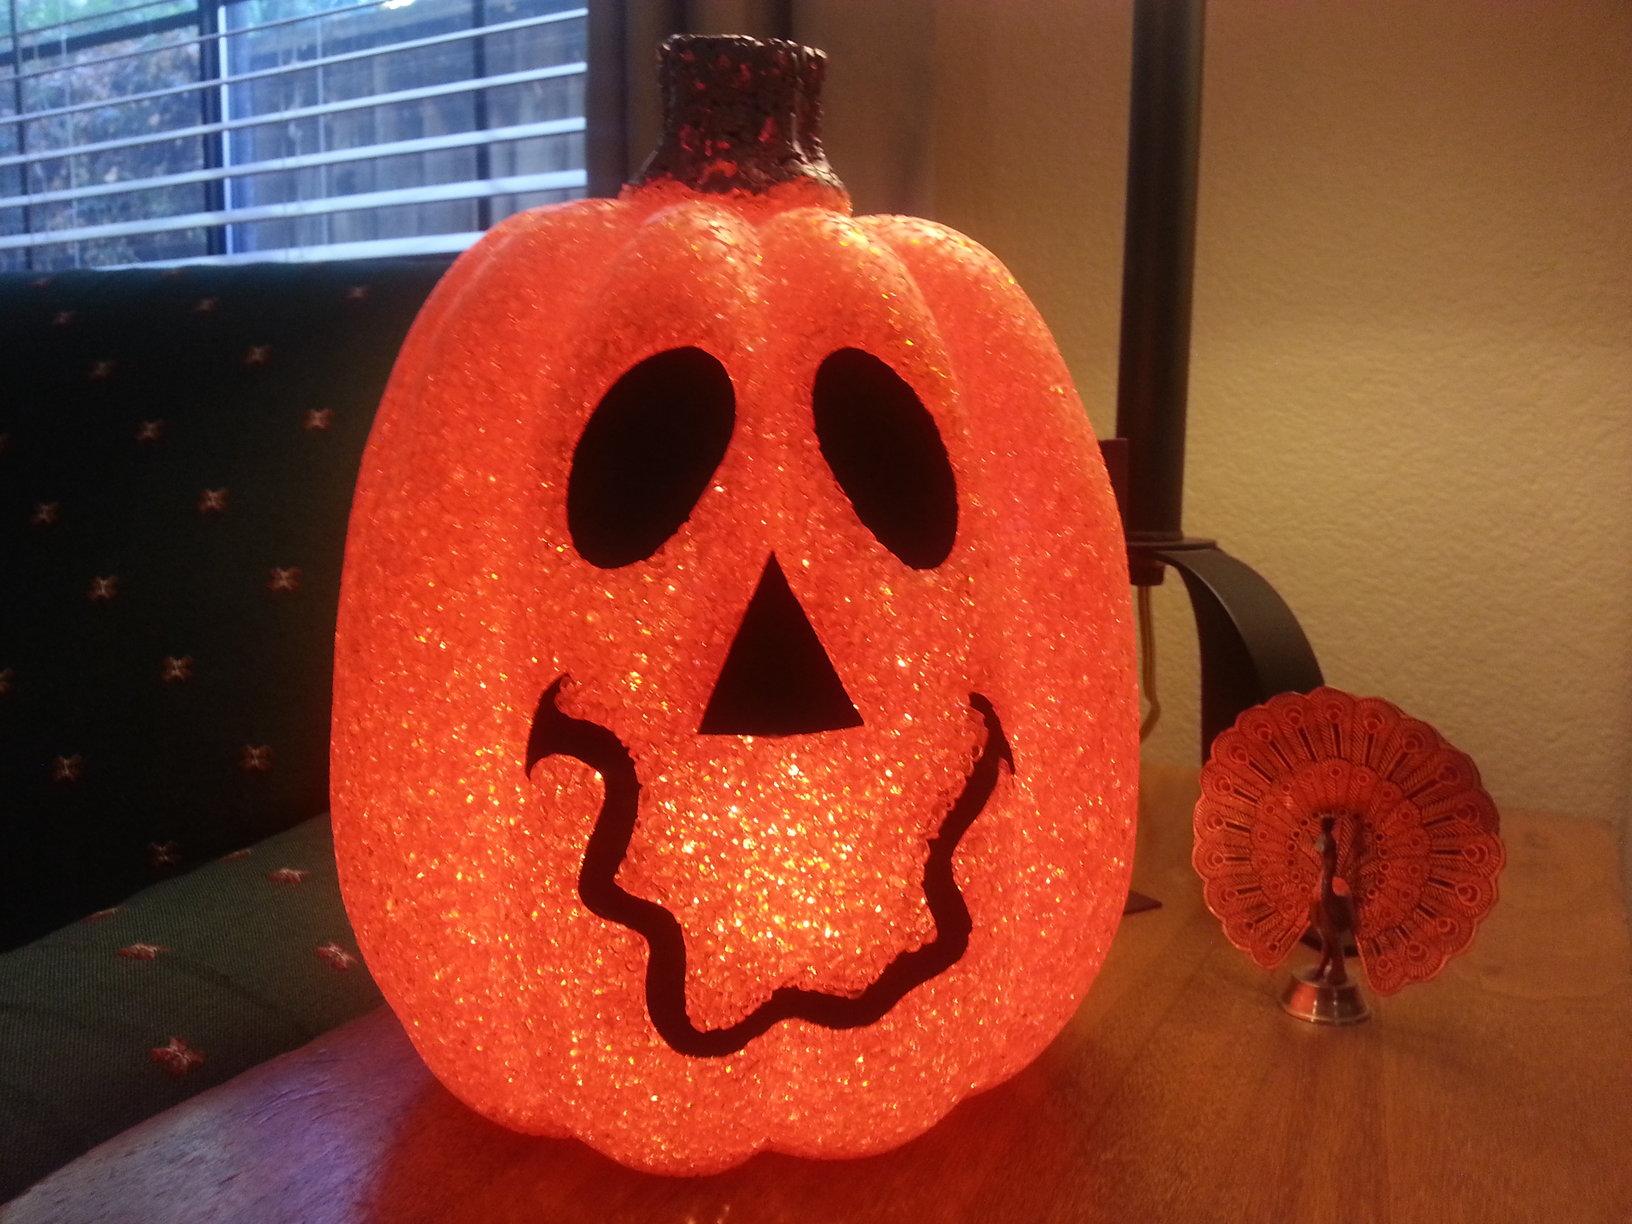 A pumpkin lantern serves as a Halloween decoration.